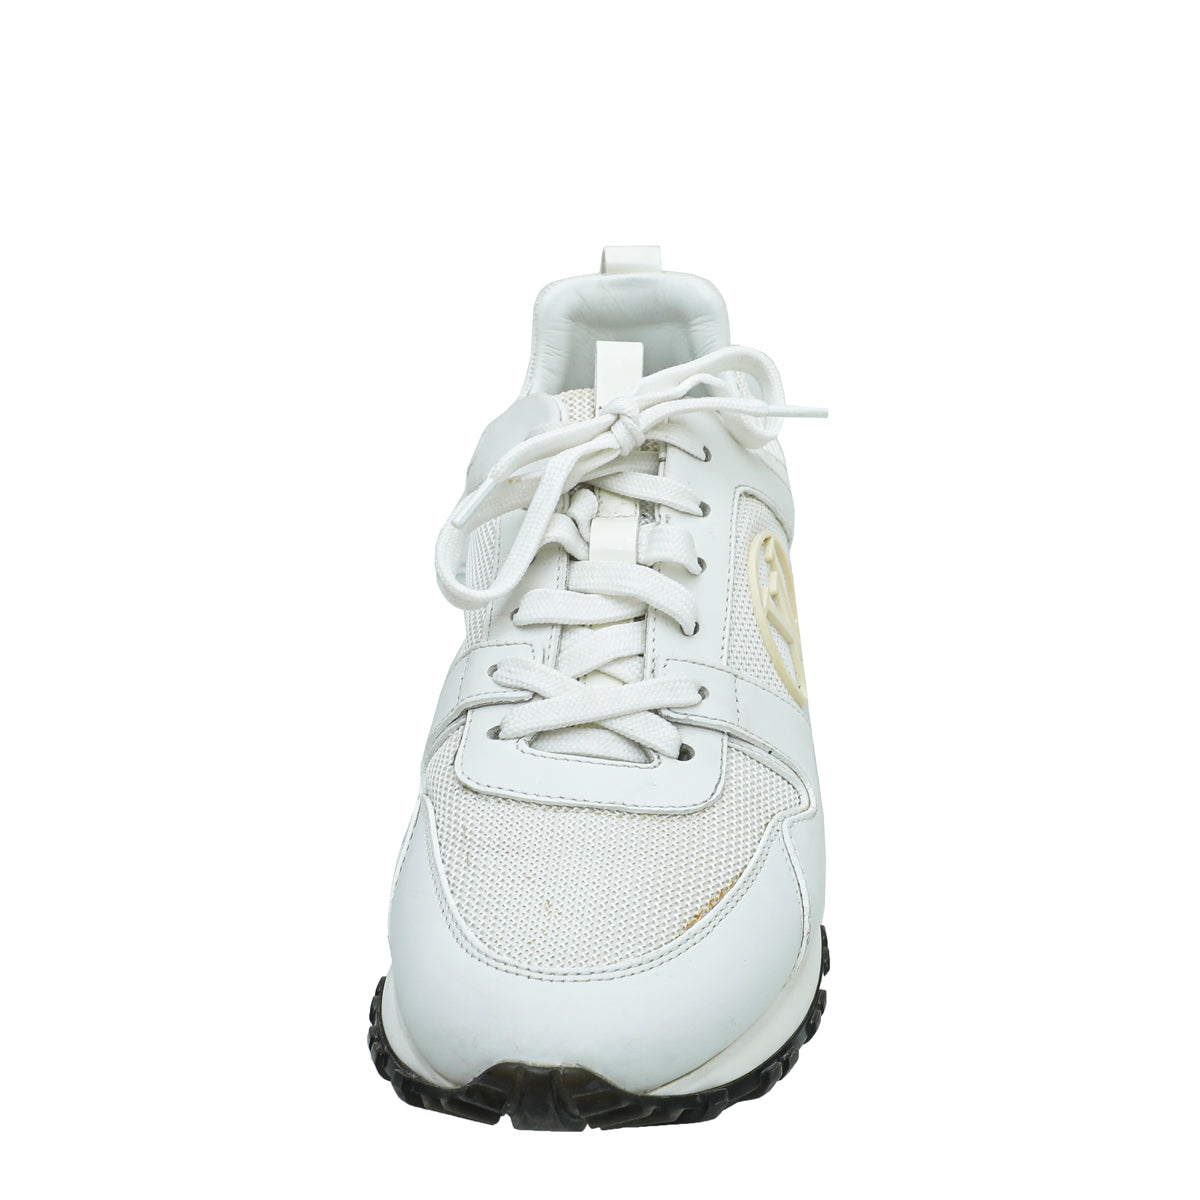 Run away trainers Louis Vuitton White size 40 EU in Rubber - 27703688